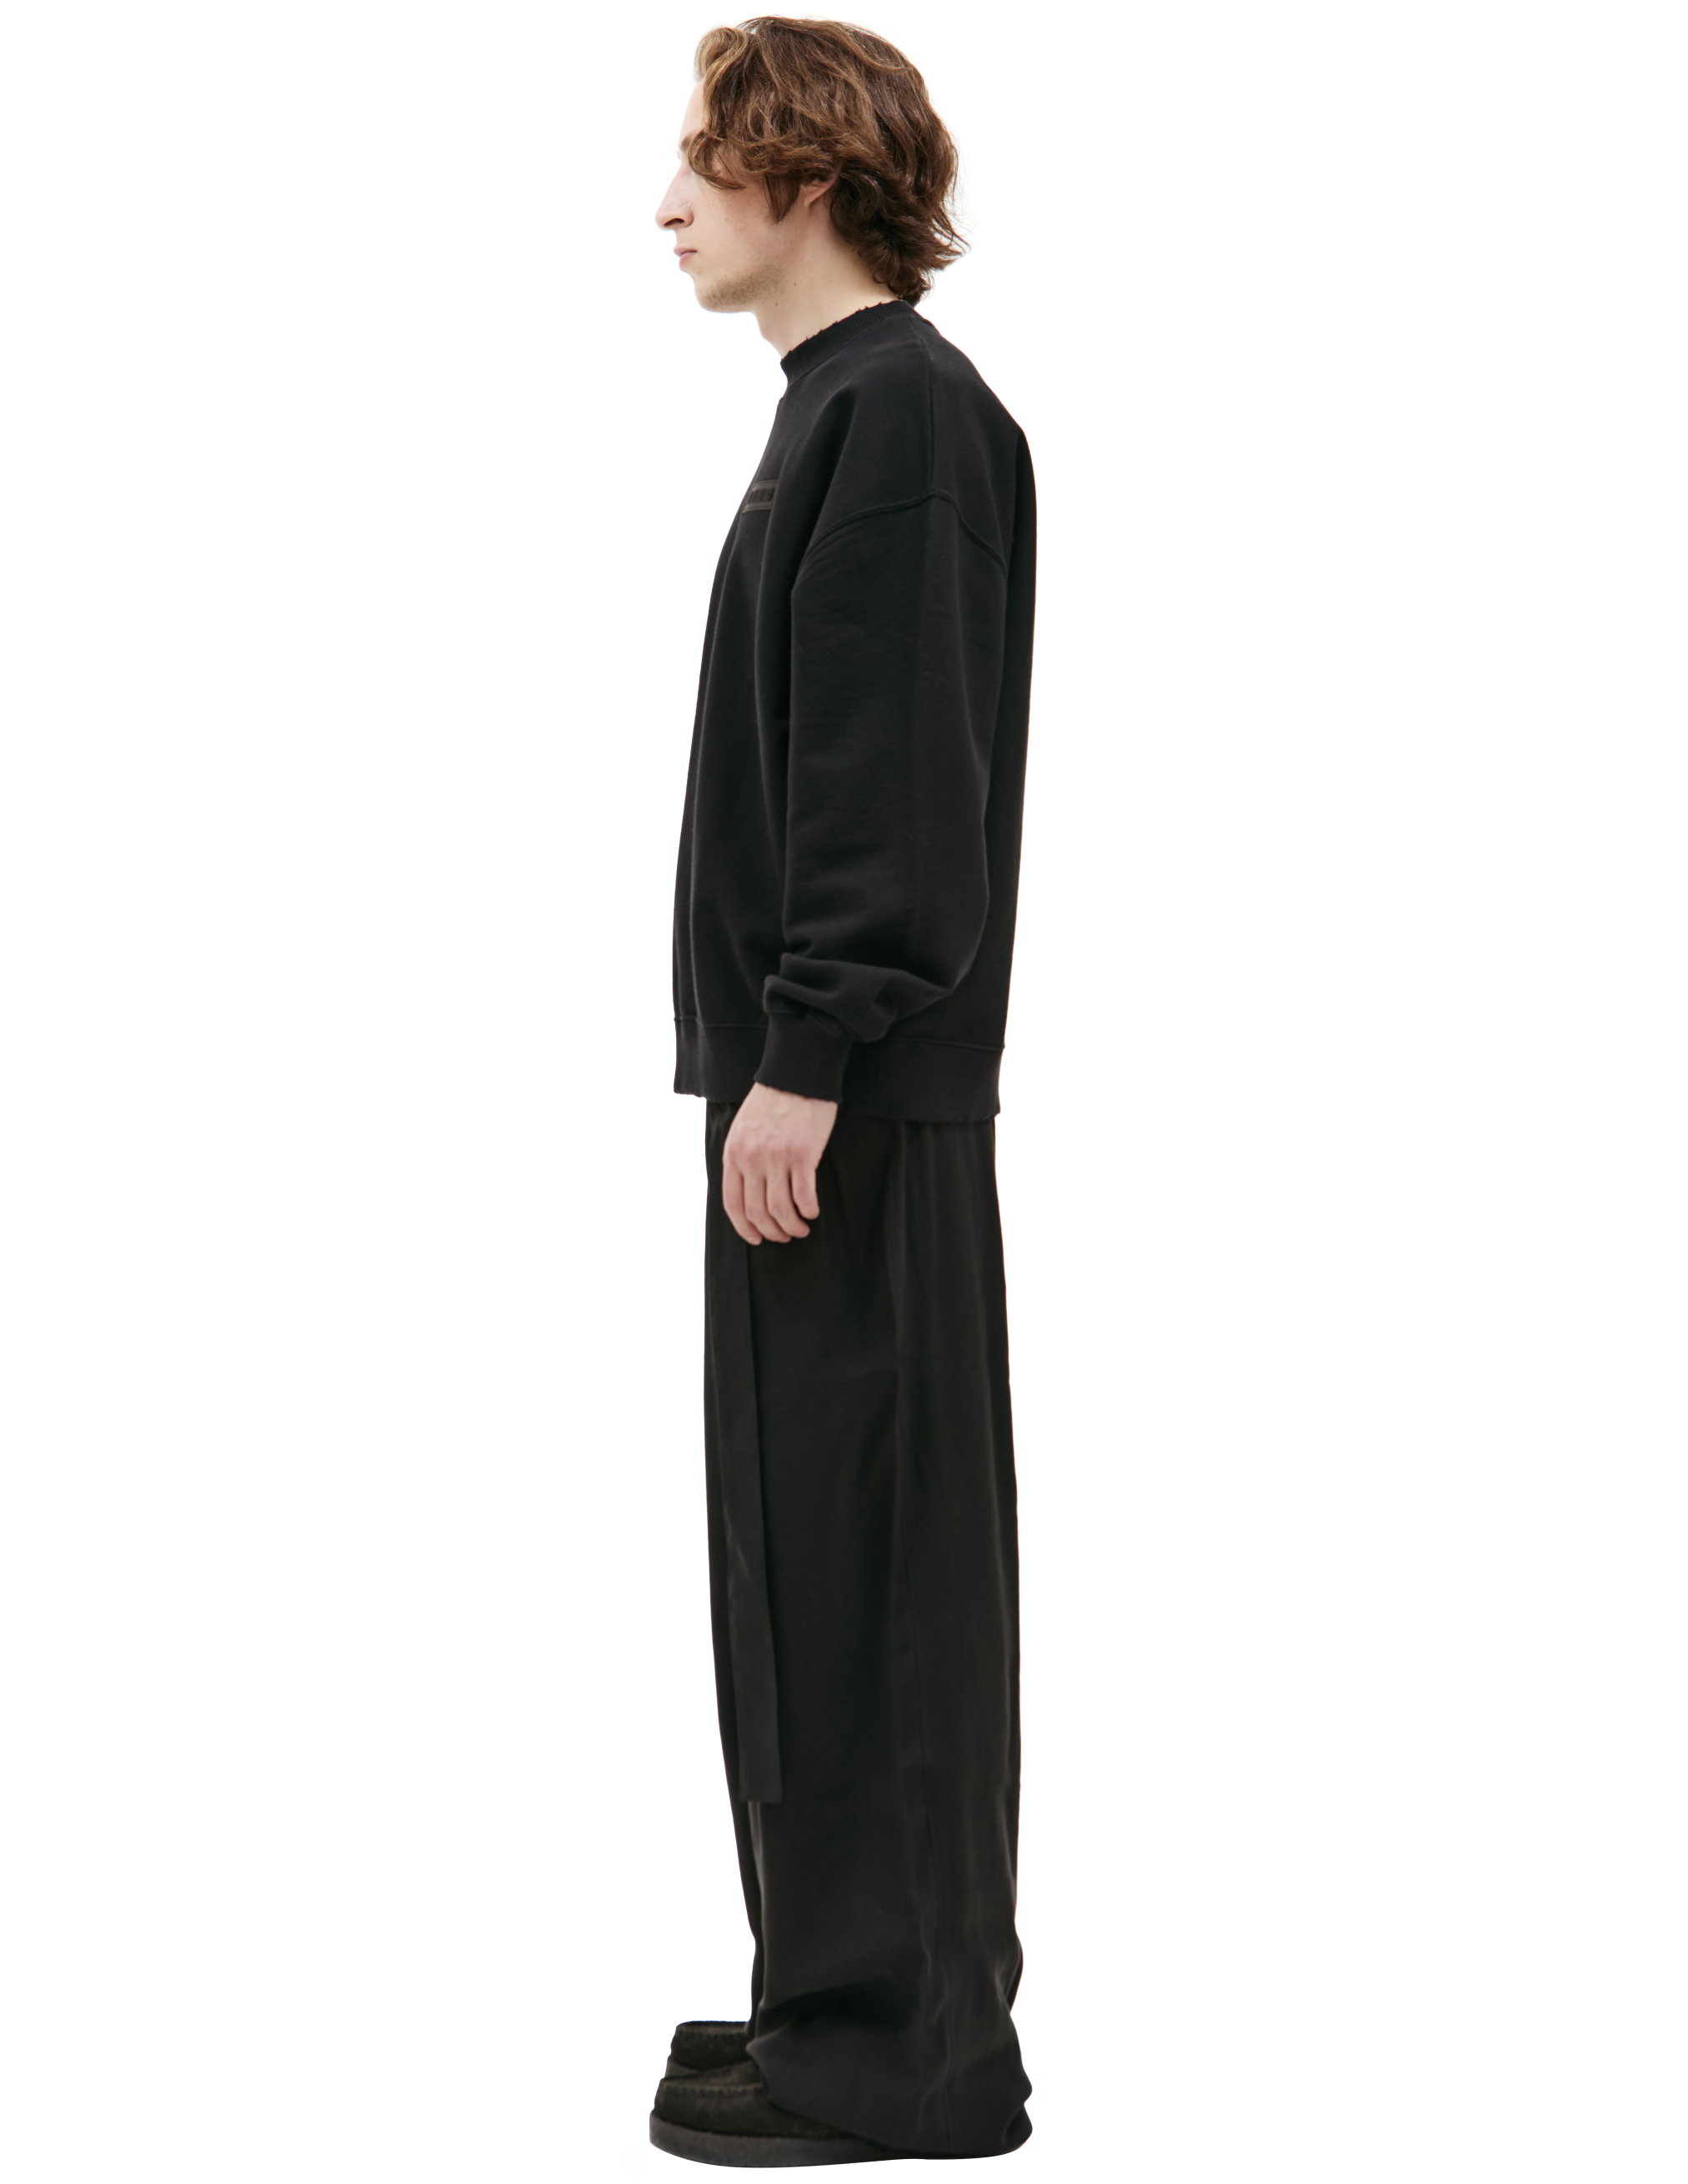 Черный свитшот с патчем LOUIS GABRIEL NOUCHI 0622/T330/001, размер M;XL 0622/T330/001 - фото 2